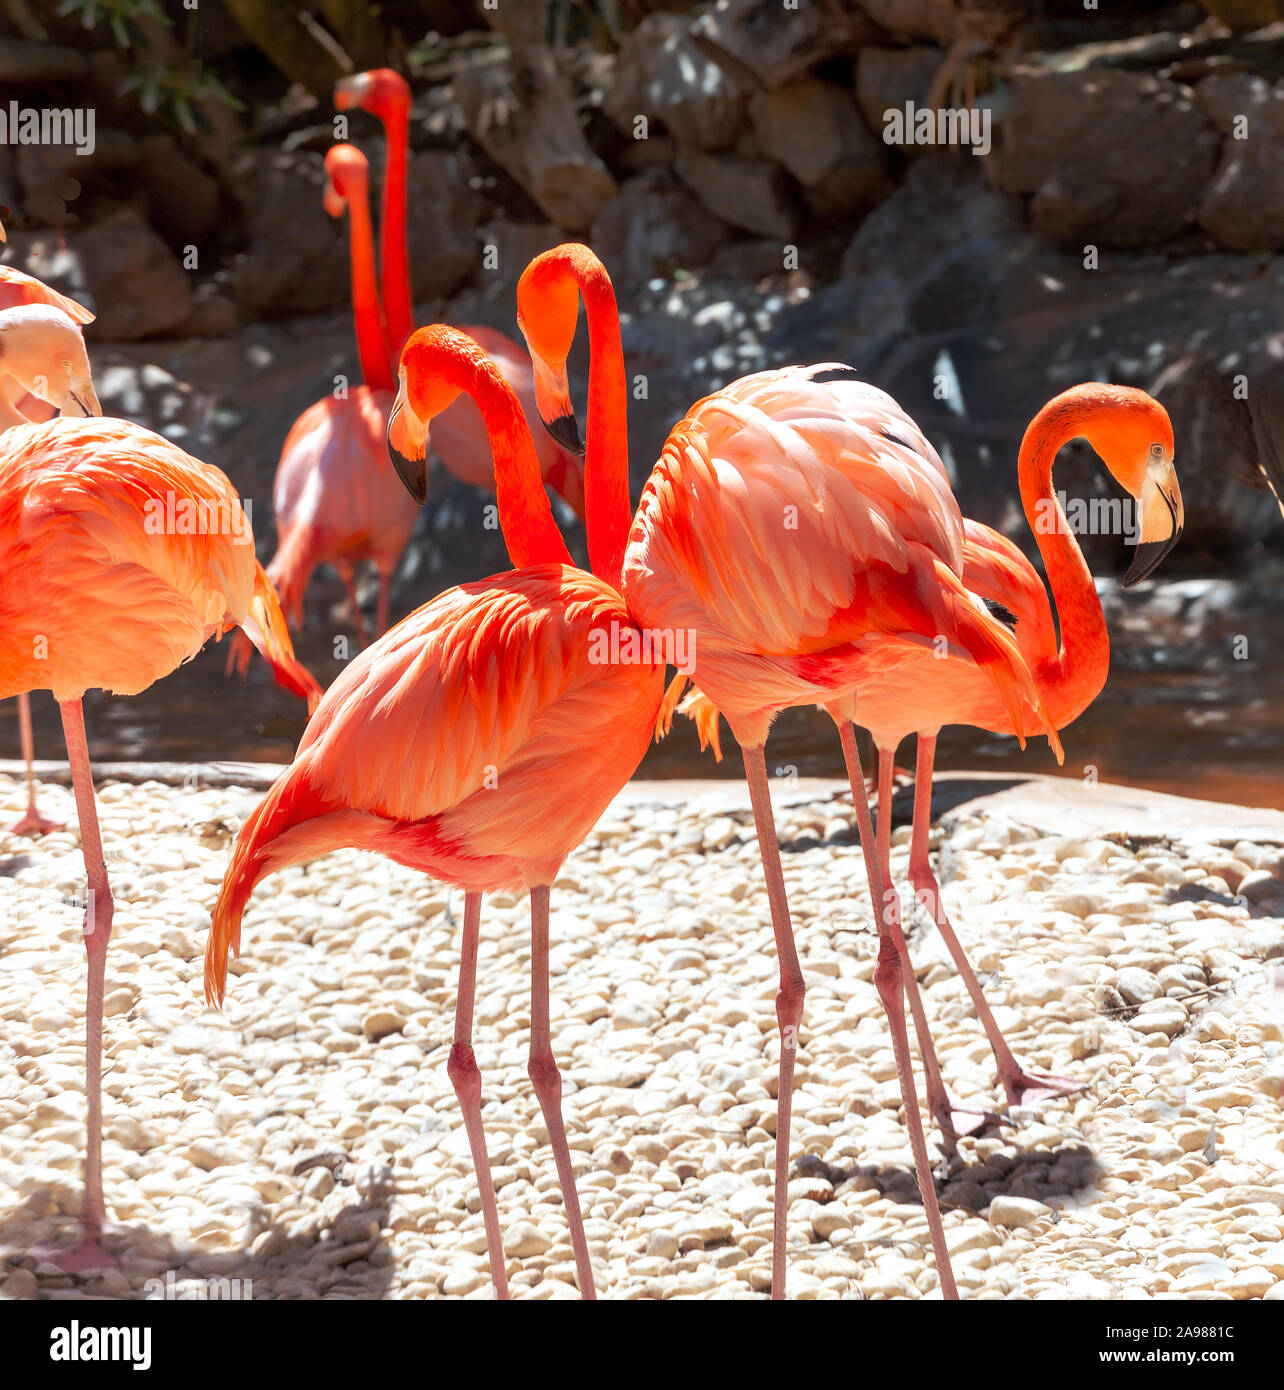 Bunte flamingo Vögel. Gran Canaria, Kanarische Inseln, Spanien Stockfoto